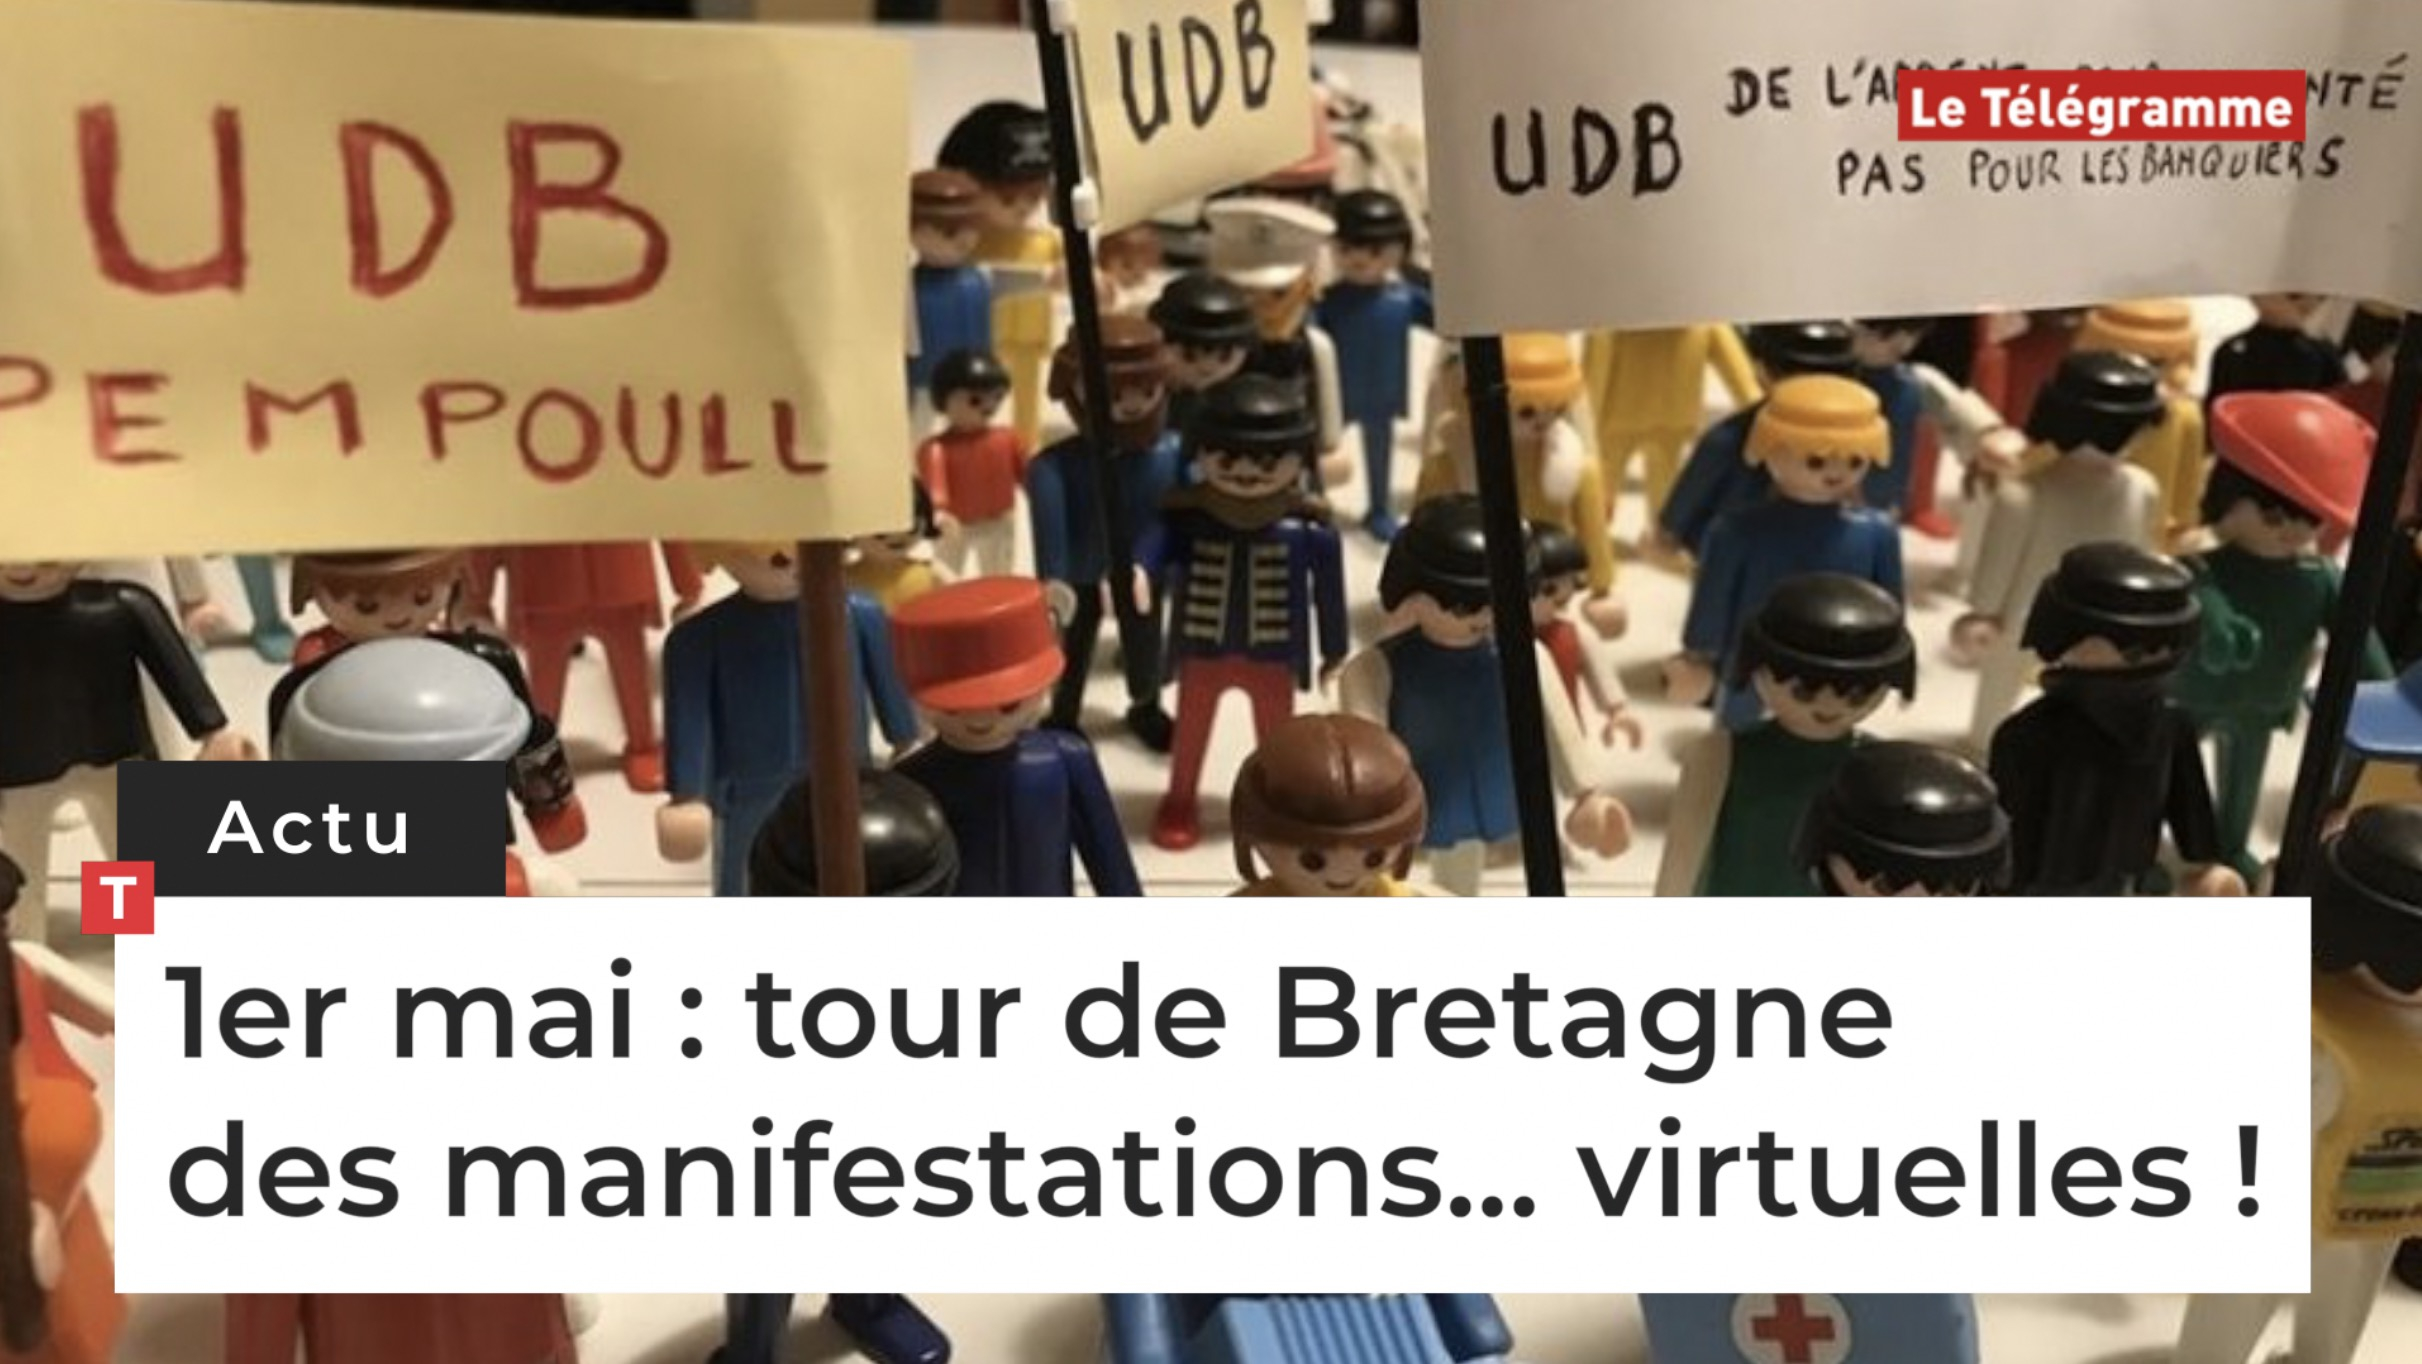 1er mai : tour de Bretagne des manifestations... virtuelles ! (Le Télégramme)